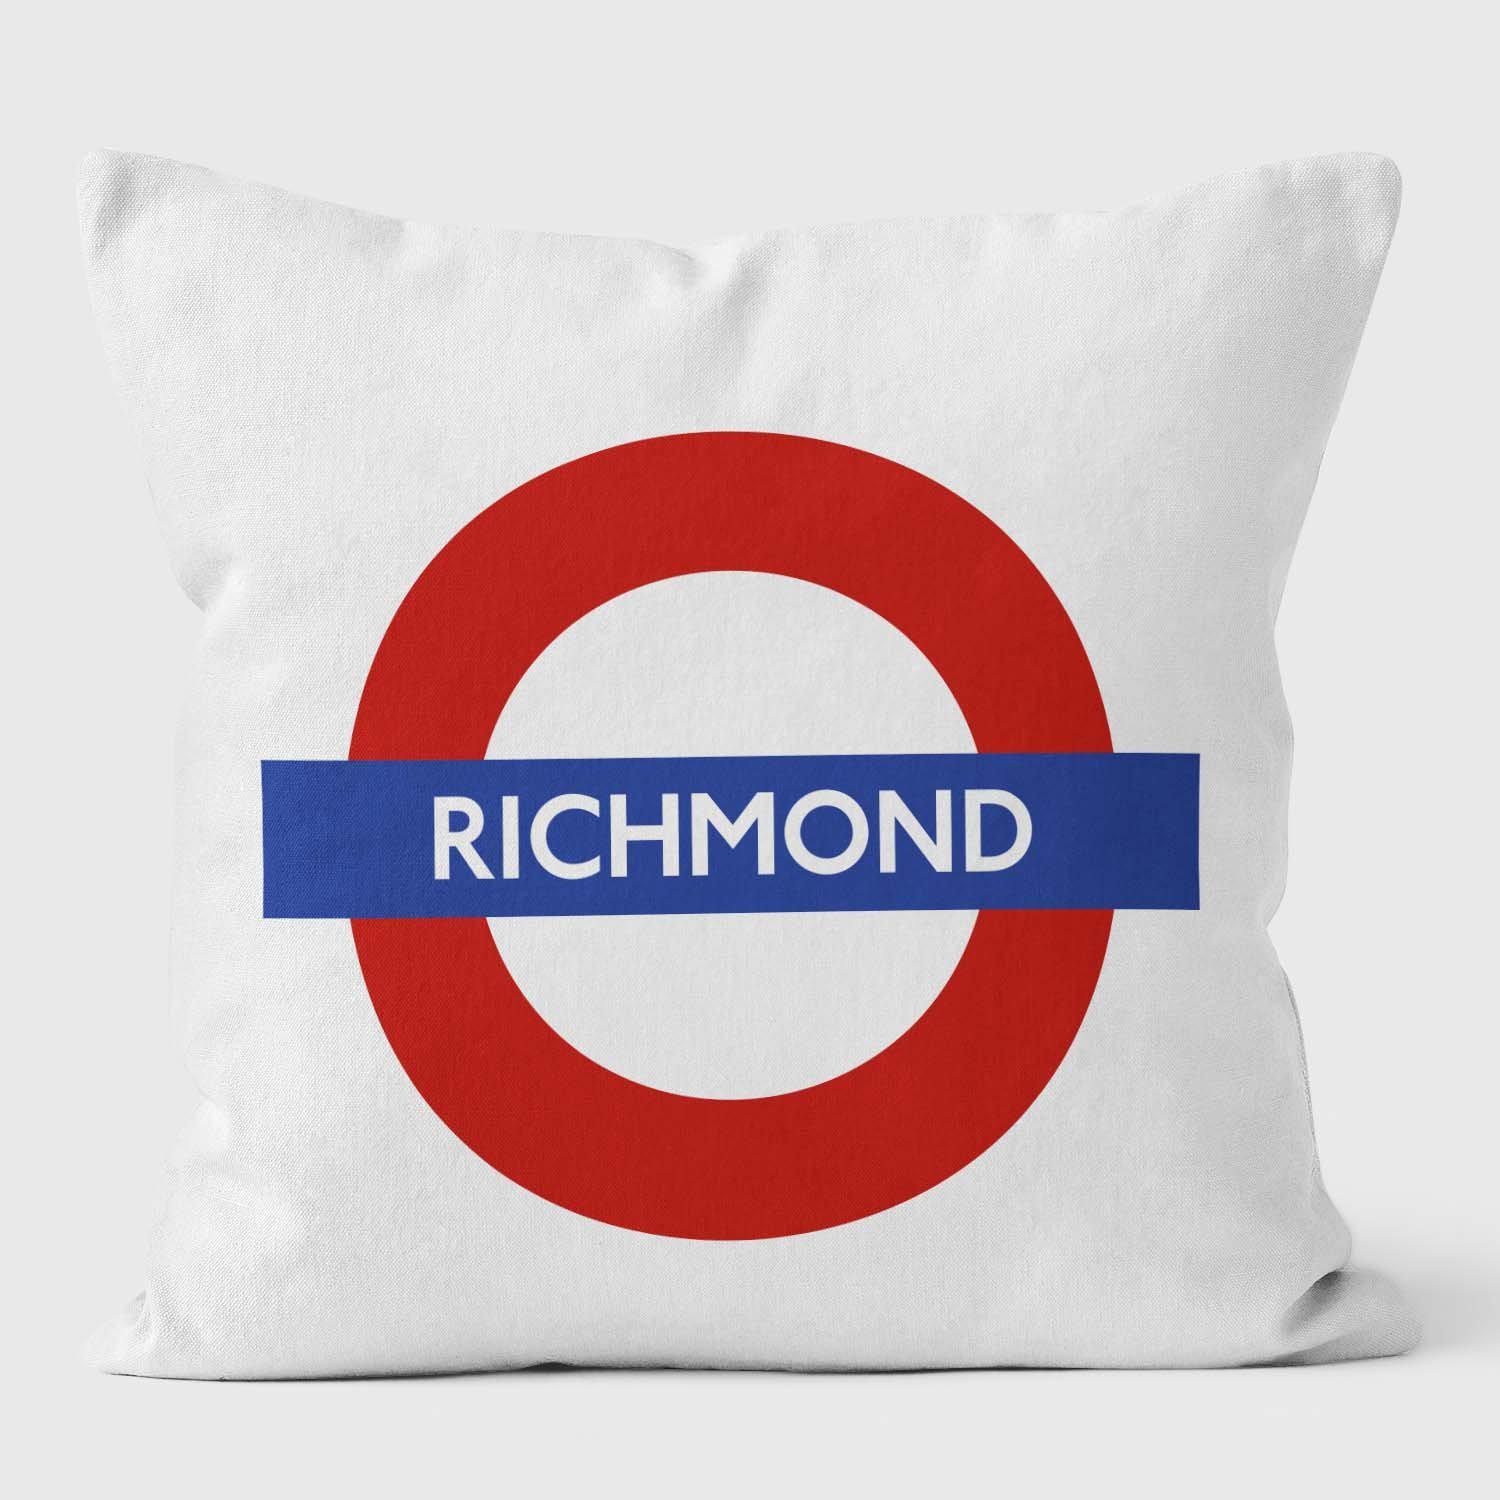 Richmond London Underground Tube Station Roundel Cushion - Handmade Cushions UK - WeLoveCushions